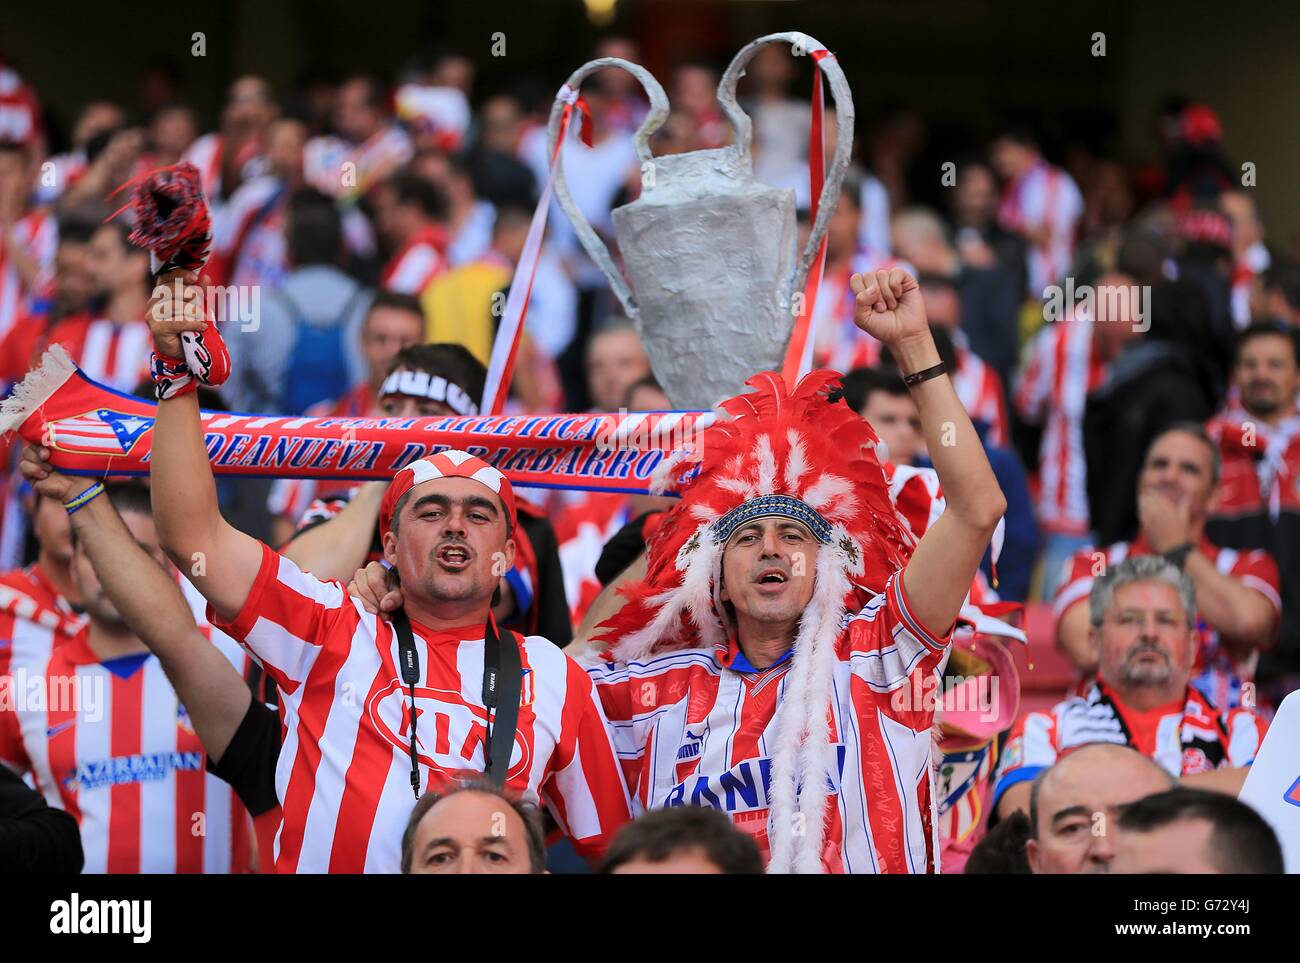 Les fans de l'Atletico Madrid montrent leur soutien à leur équipe dans le supports Banque D'Images